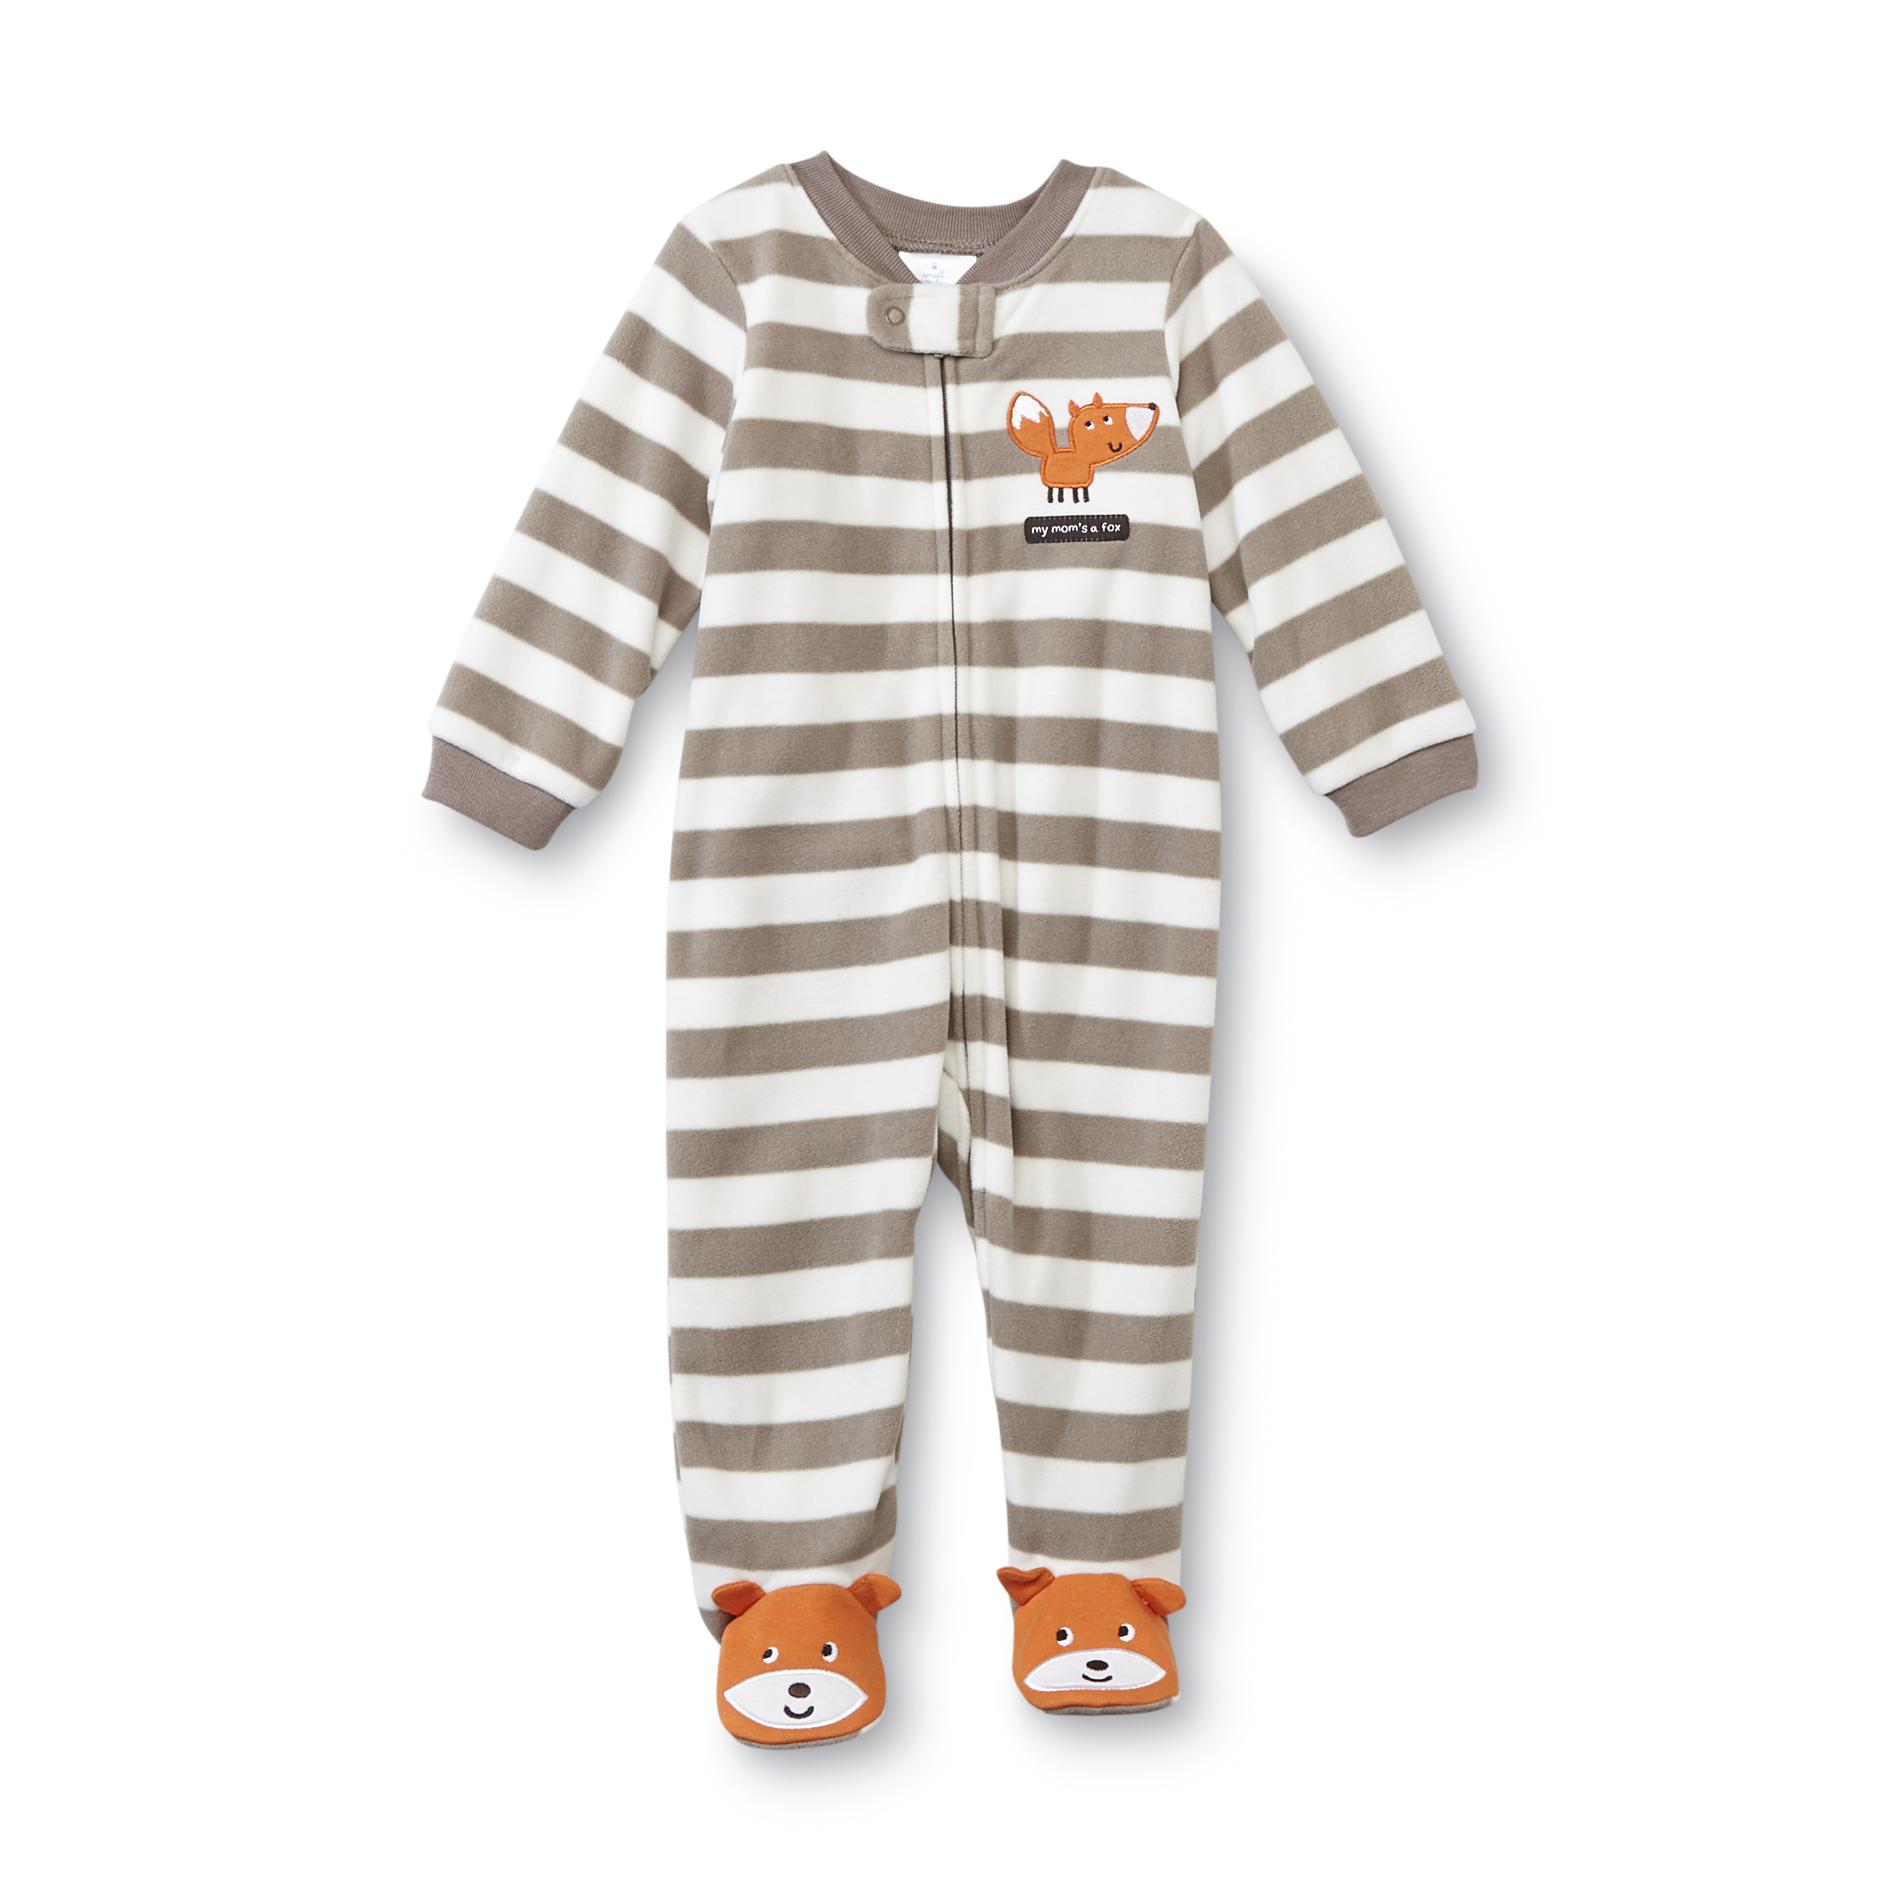 Small Wonders Newborn Boy's Footed Pajamas - Fox